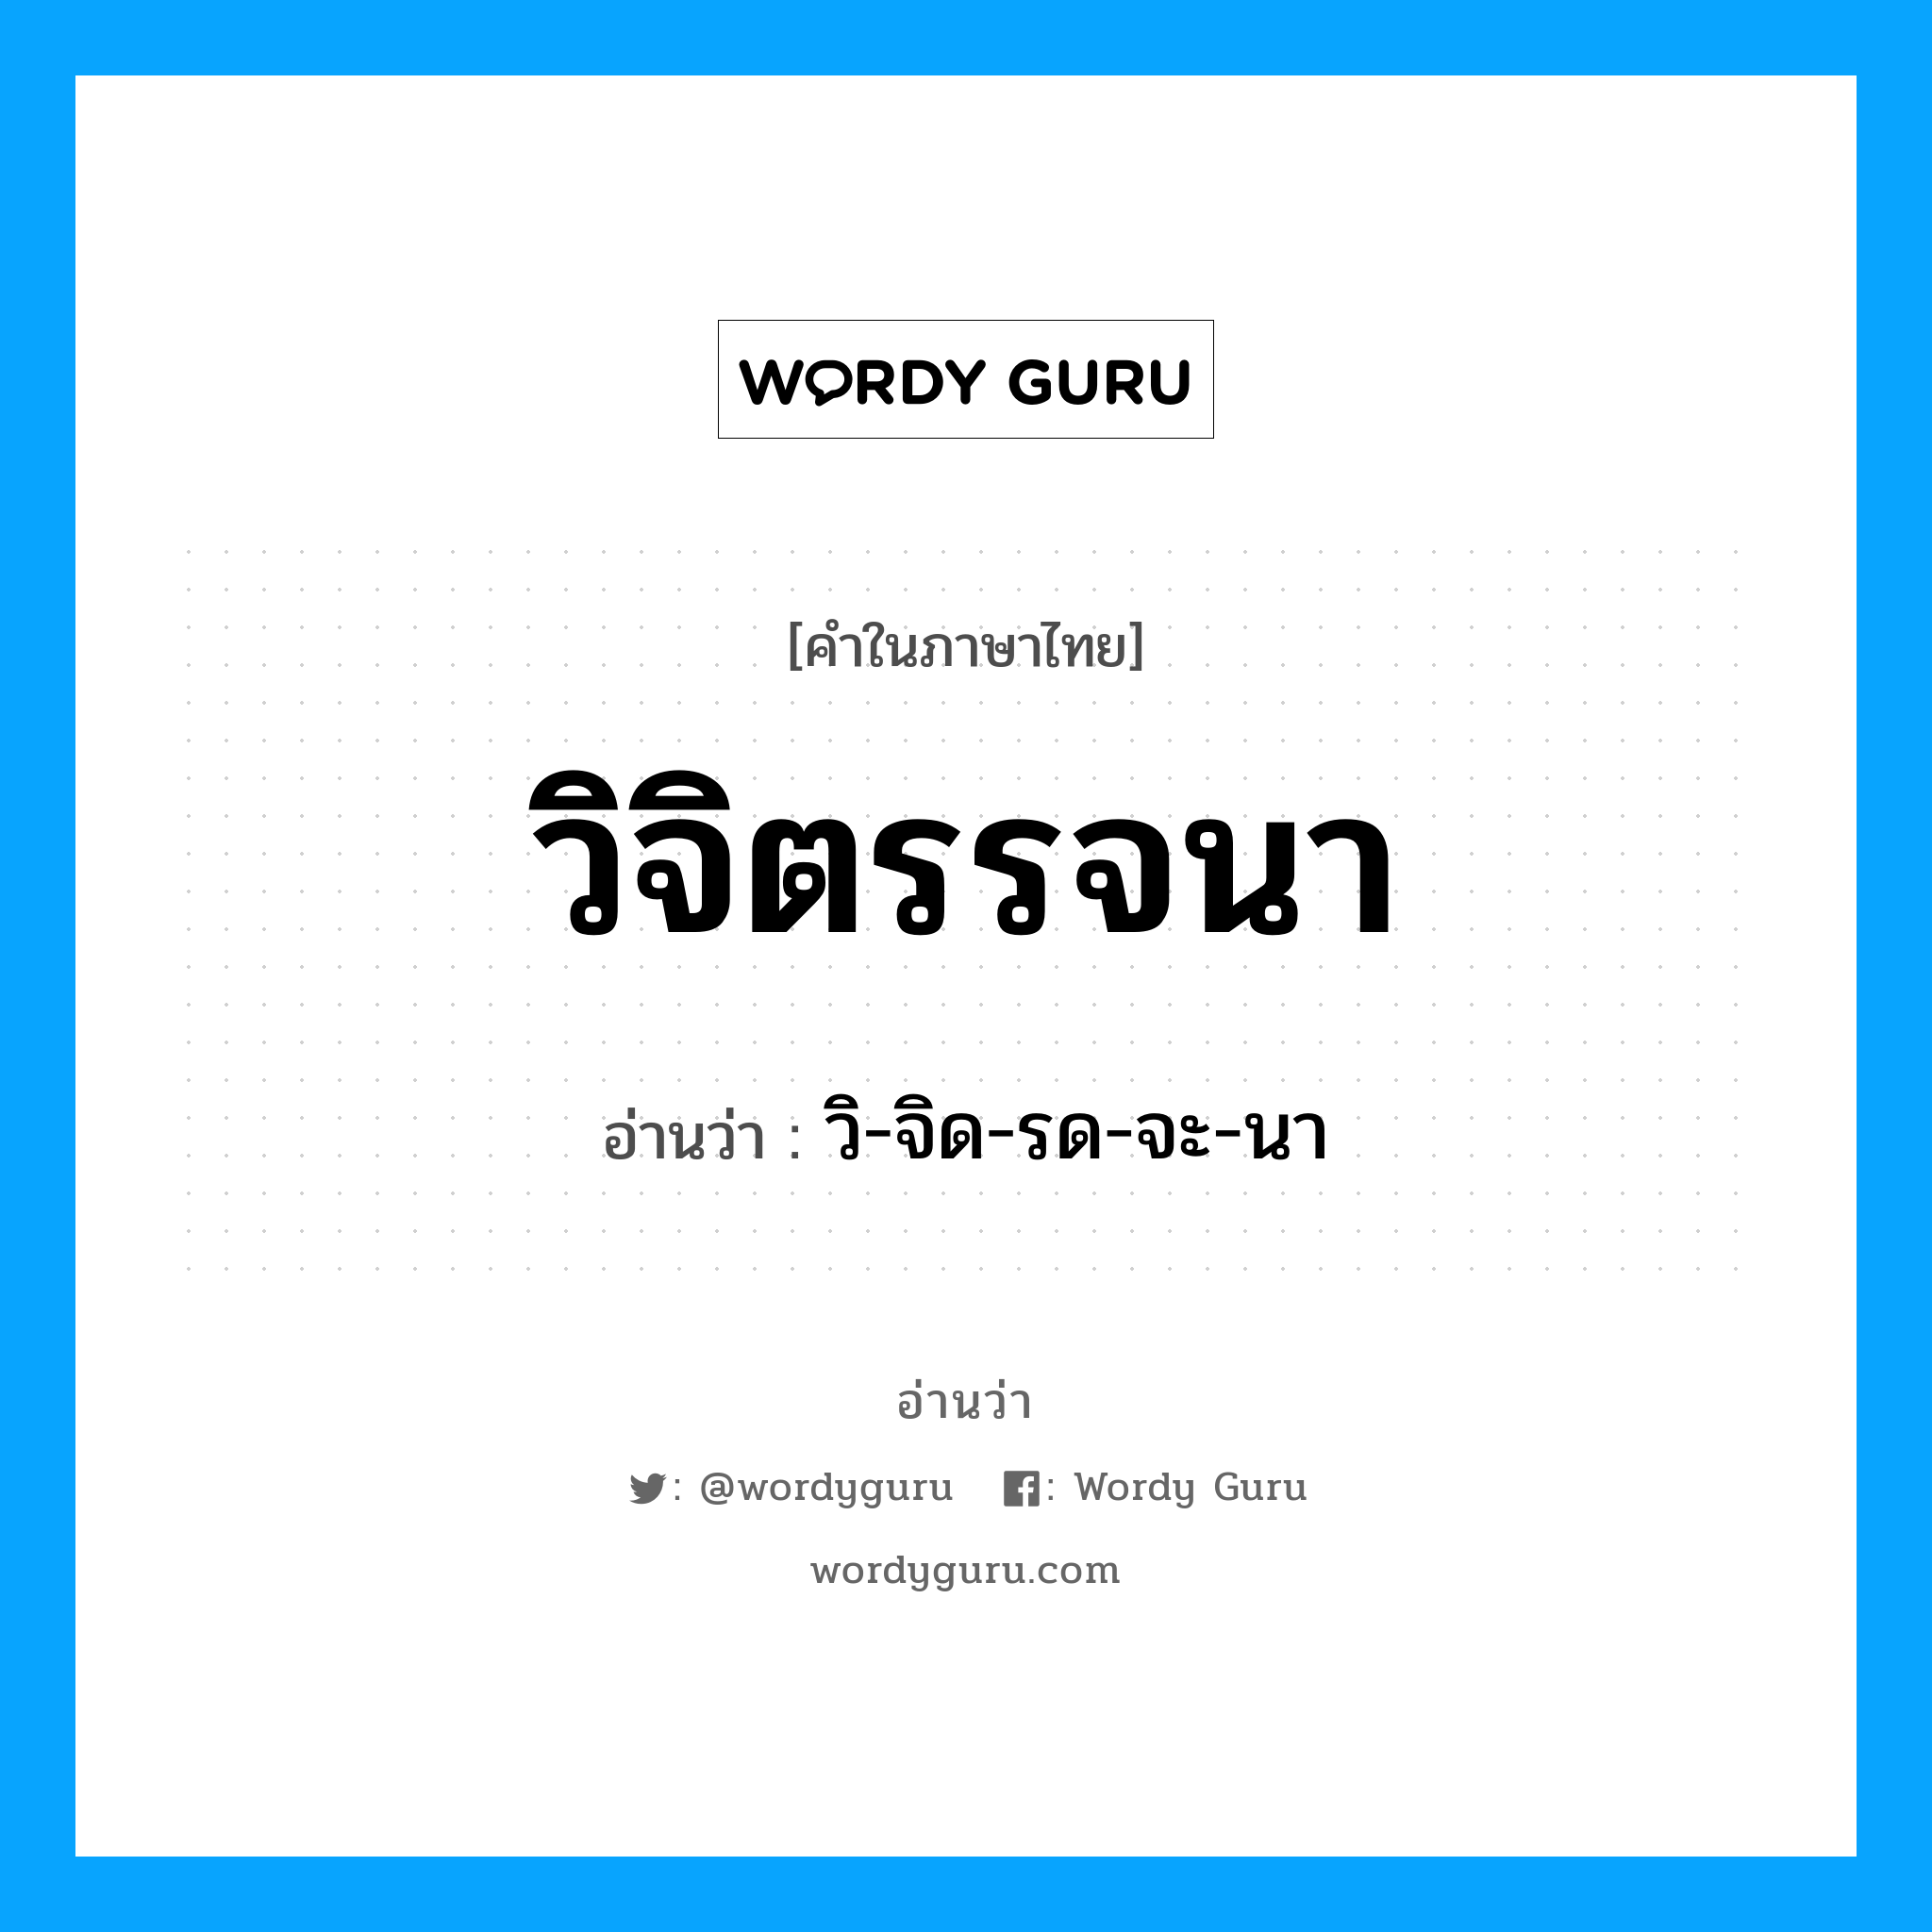 วิ-จิด-รด-จะ-นา เป็นคำอ่านของคำไหน?, คำในภาษาไทย วิ-จิด-รด-จะ-นา อ่านว่า วิจิตรรจนา